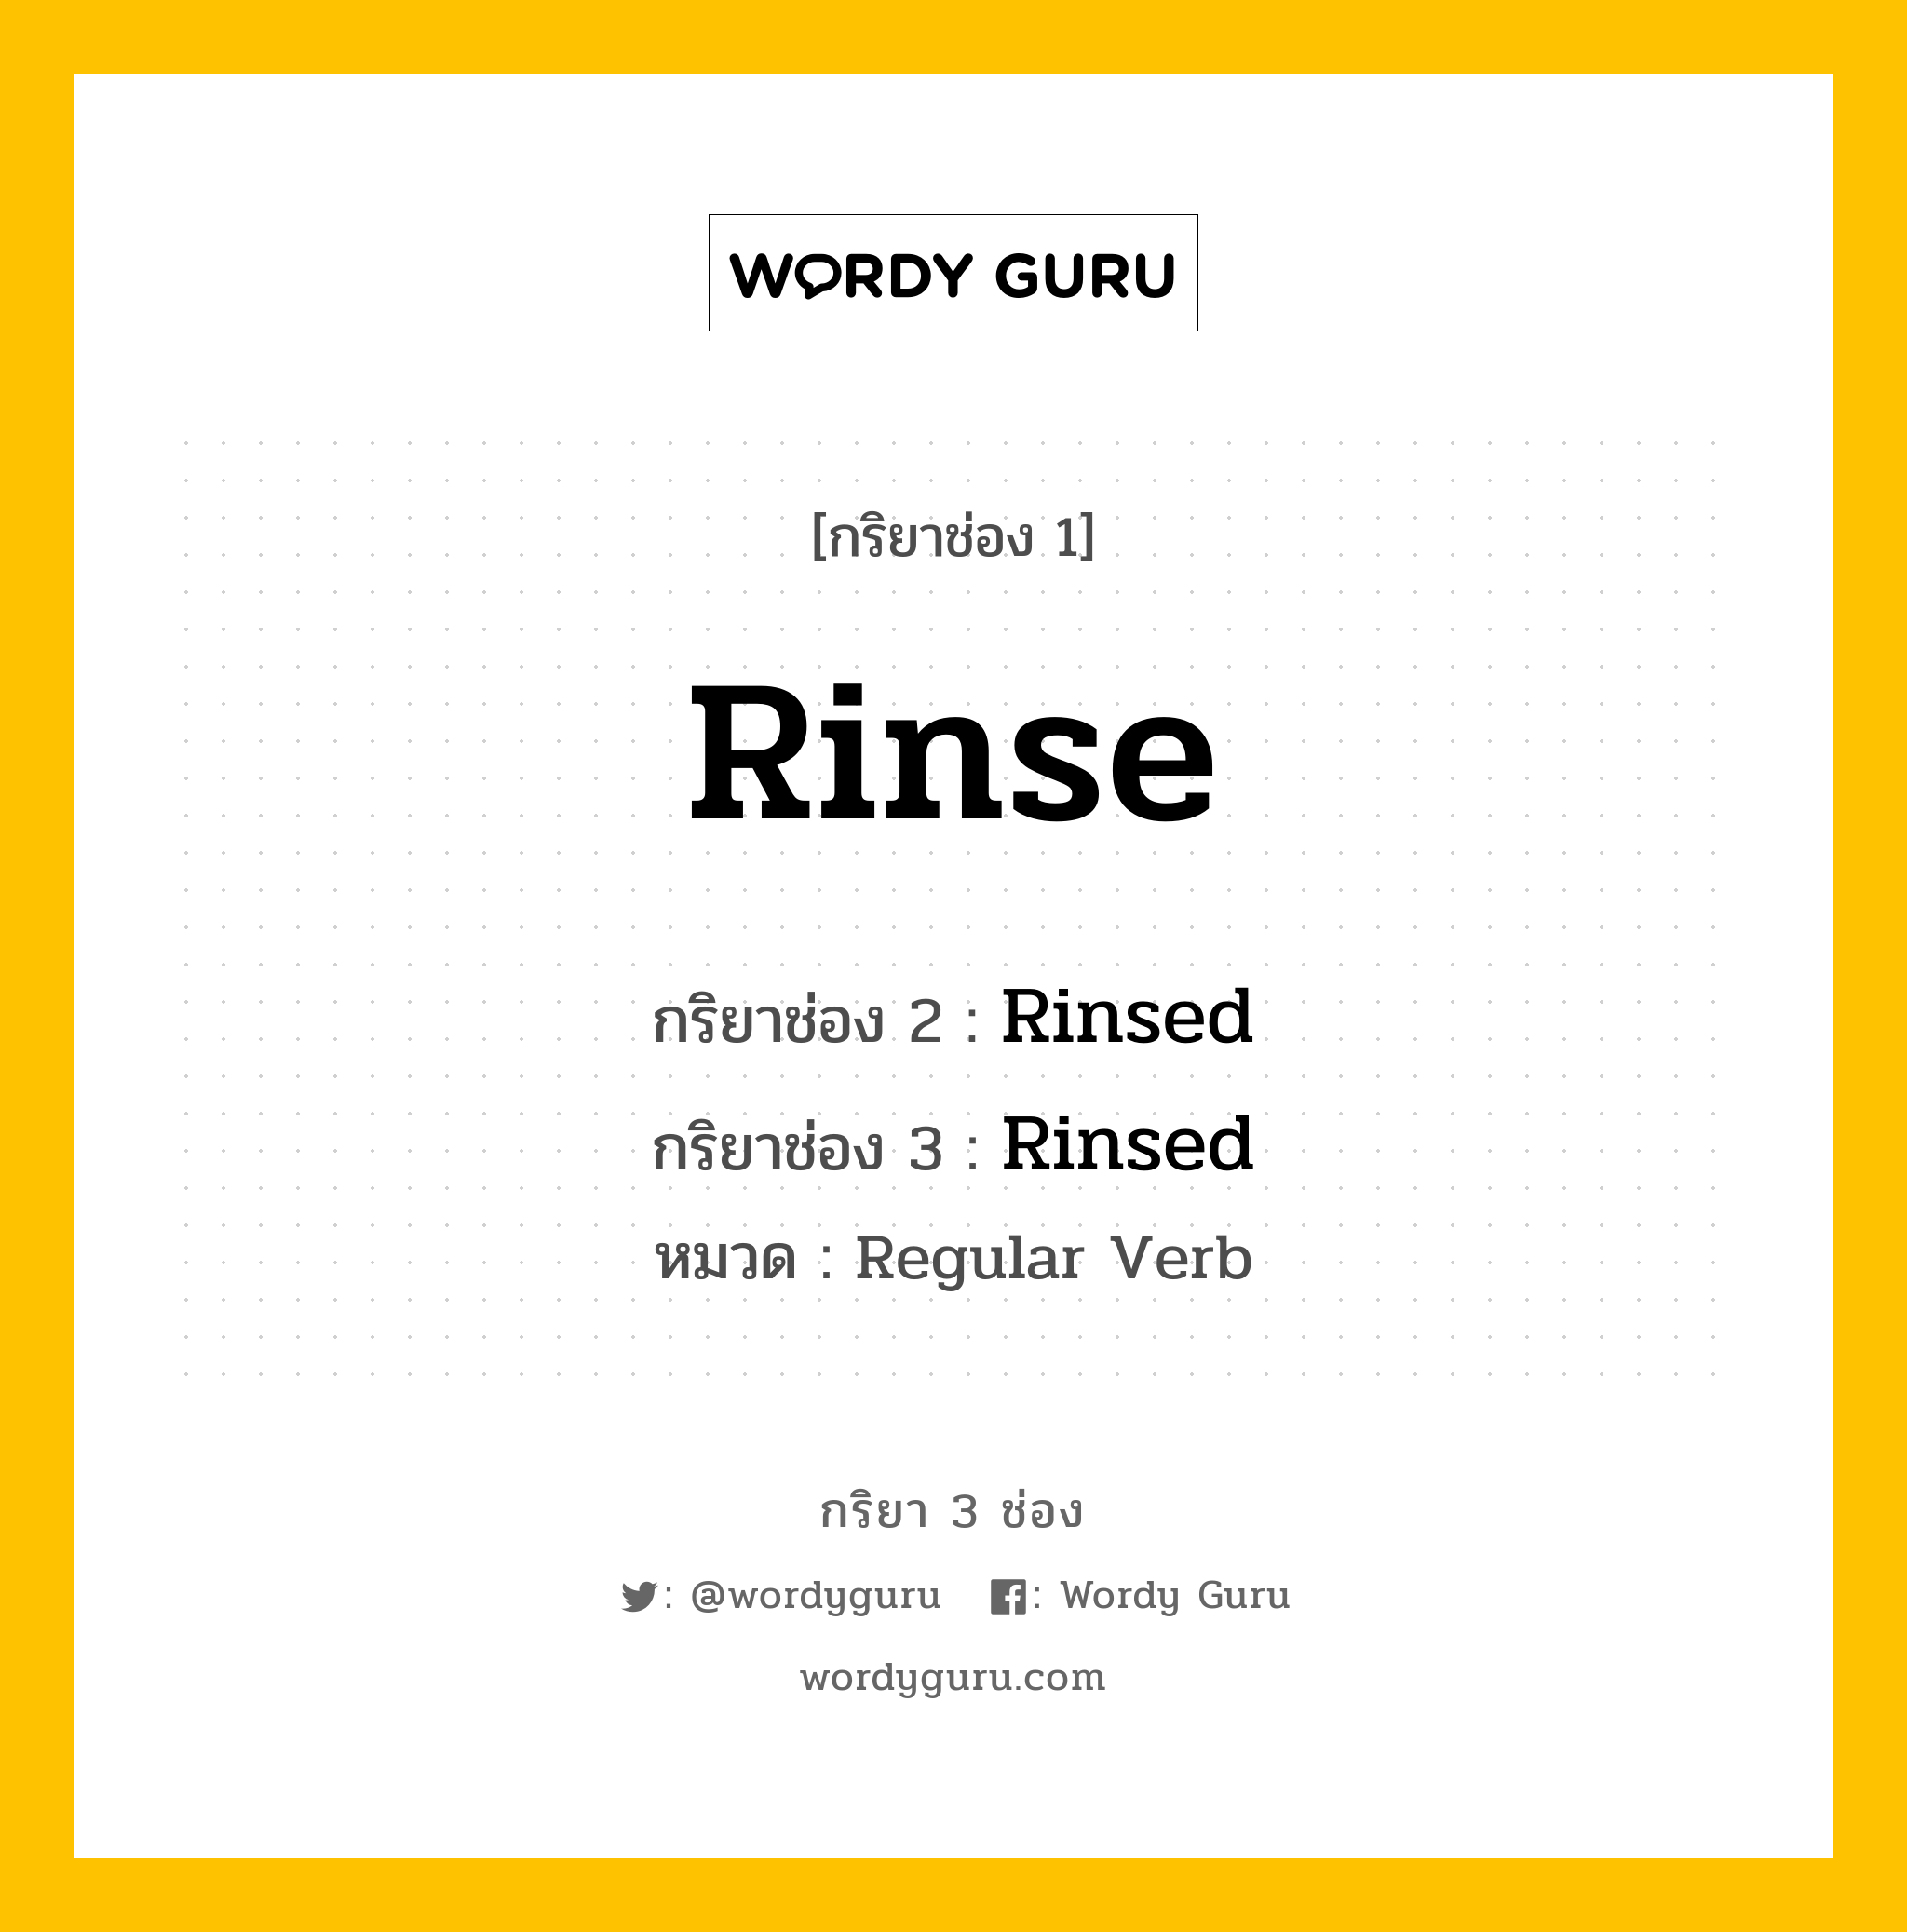 กริยา 3 ช่อง: Rinse ช่อง 2 Rinse ช่อง 3 คืออะไร, กริยาช่อง 1 Rinse กริยาช่อง 2 Rinsed กริยาช่อง 3 Rinsed หมวด Regular Verb หมวด Regular Verb